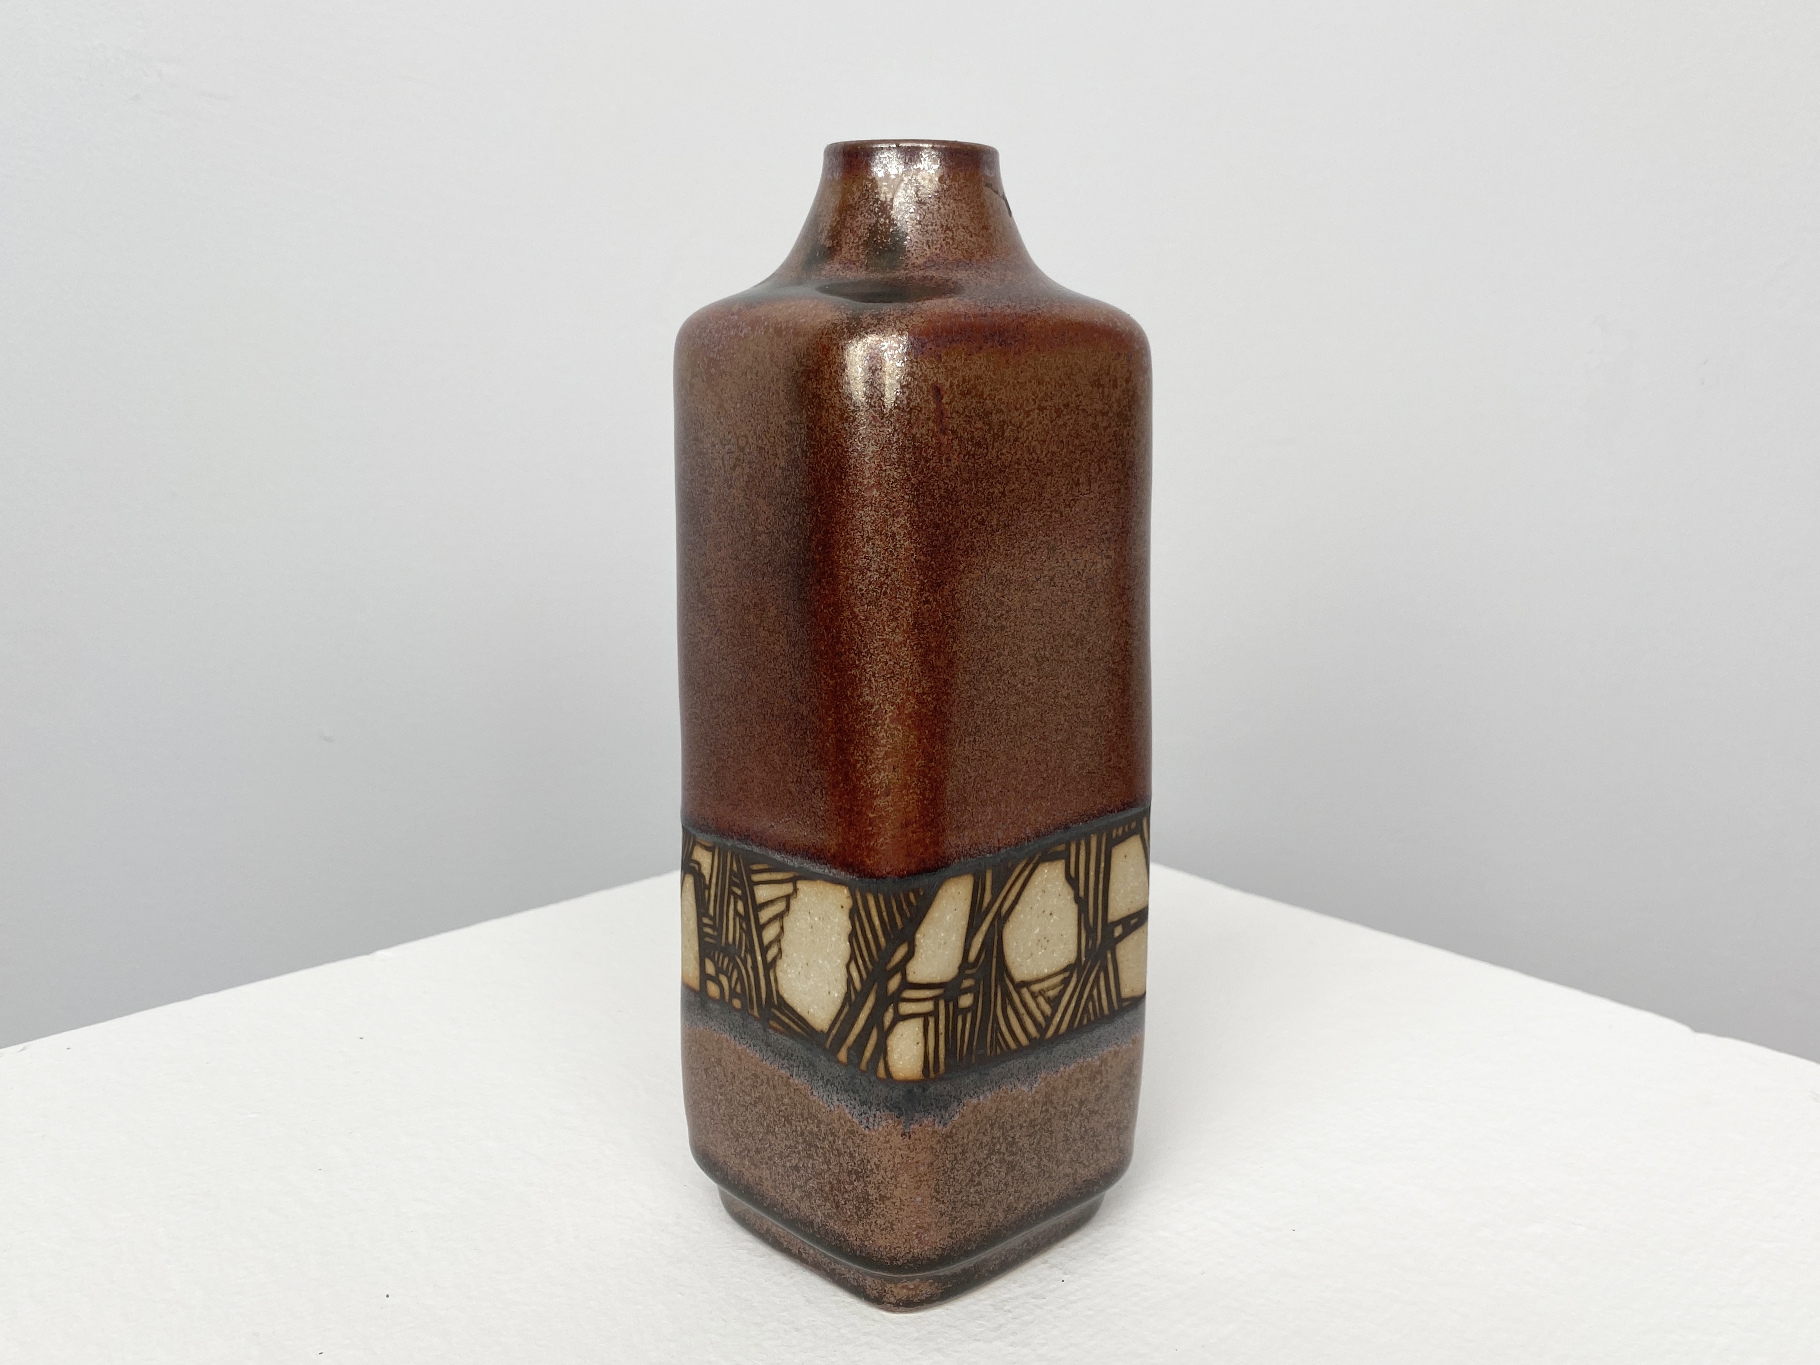 Braune Vase, Steinzeug, Eisenglasur, gedreht und geformt mit abstraktem Dekor, 1970er Jahre